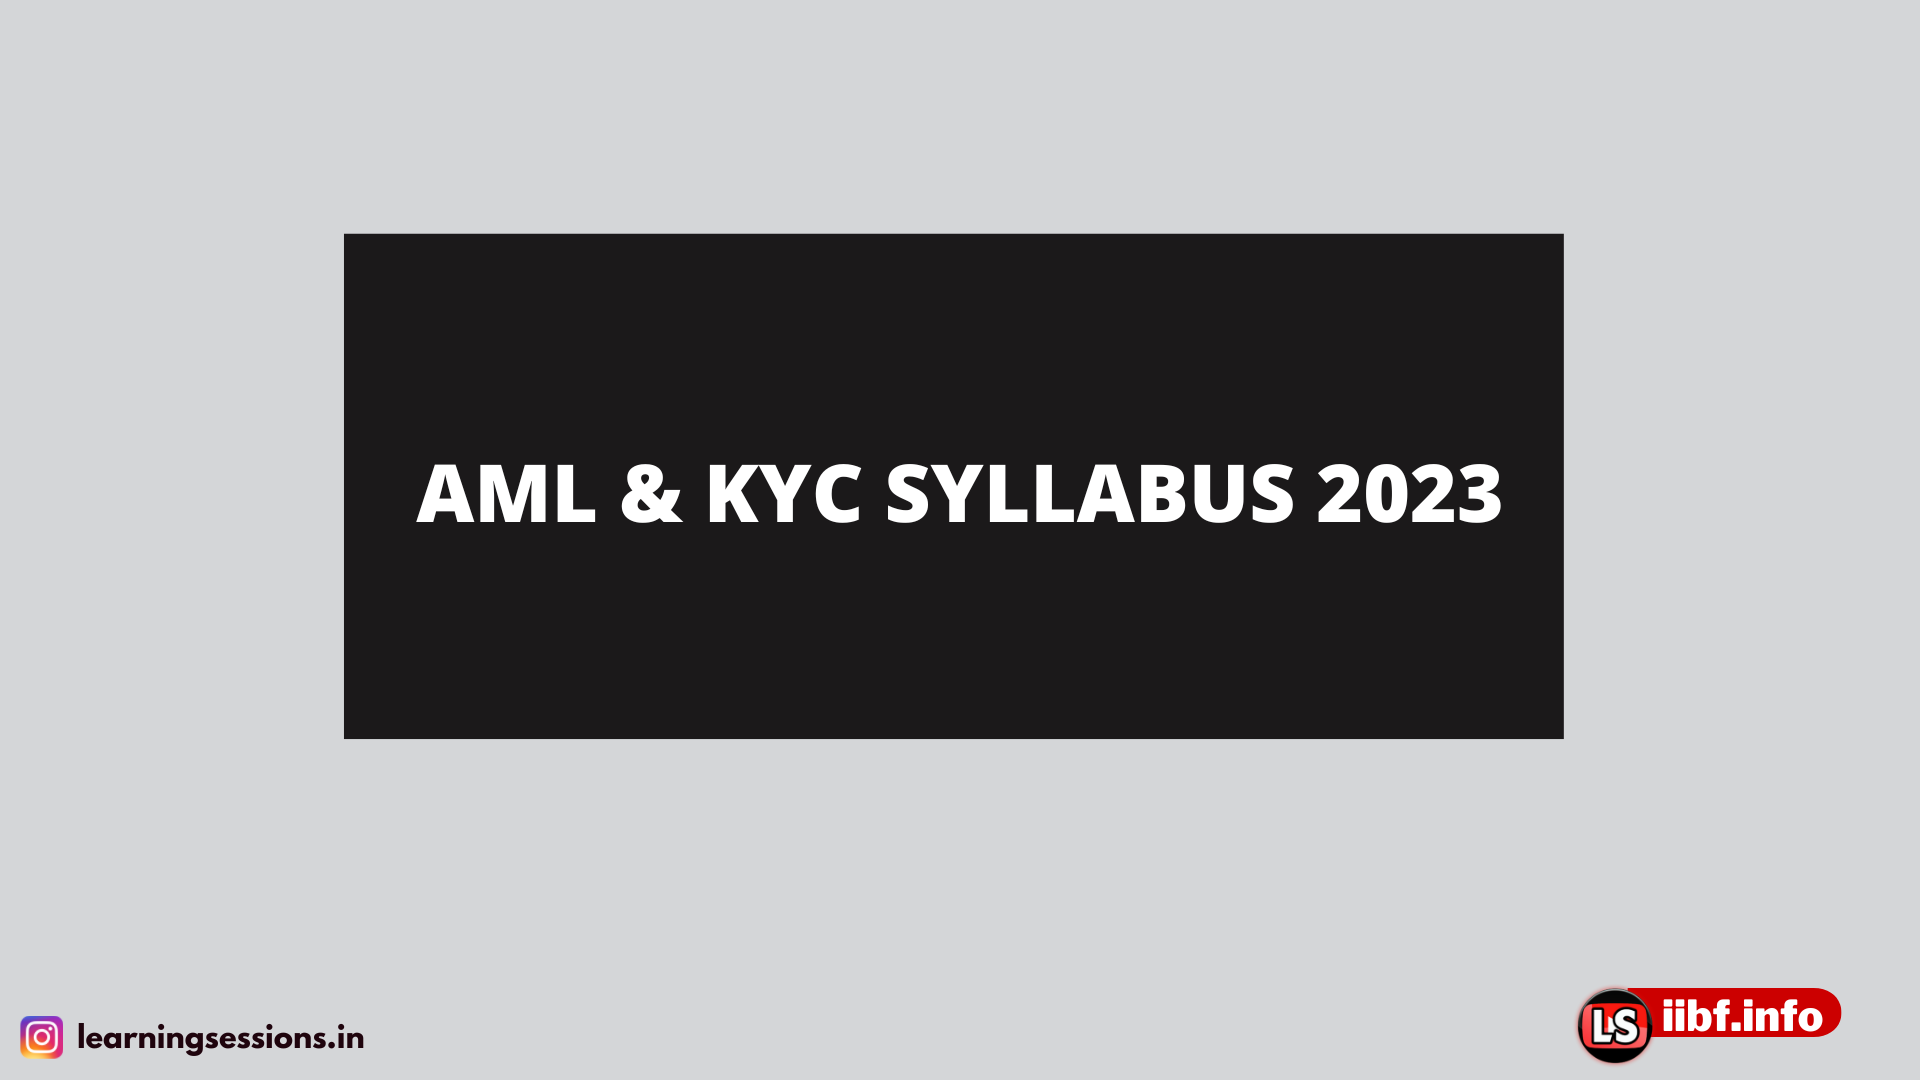 AML & KYC SYLLABUS 2023